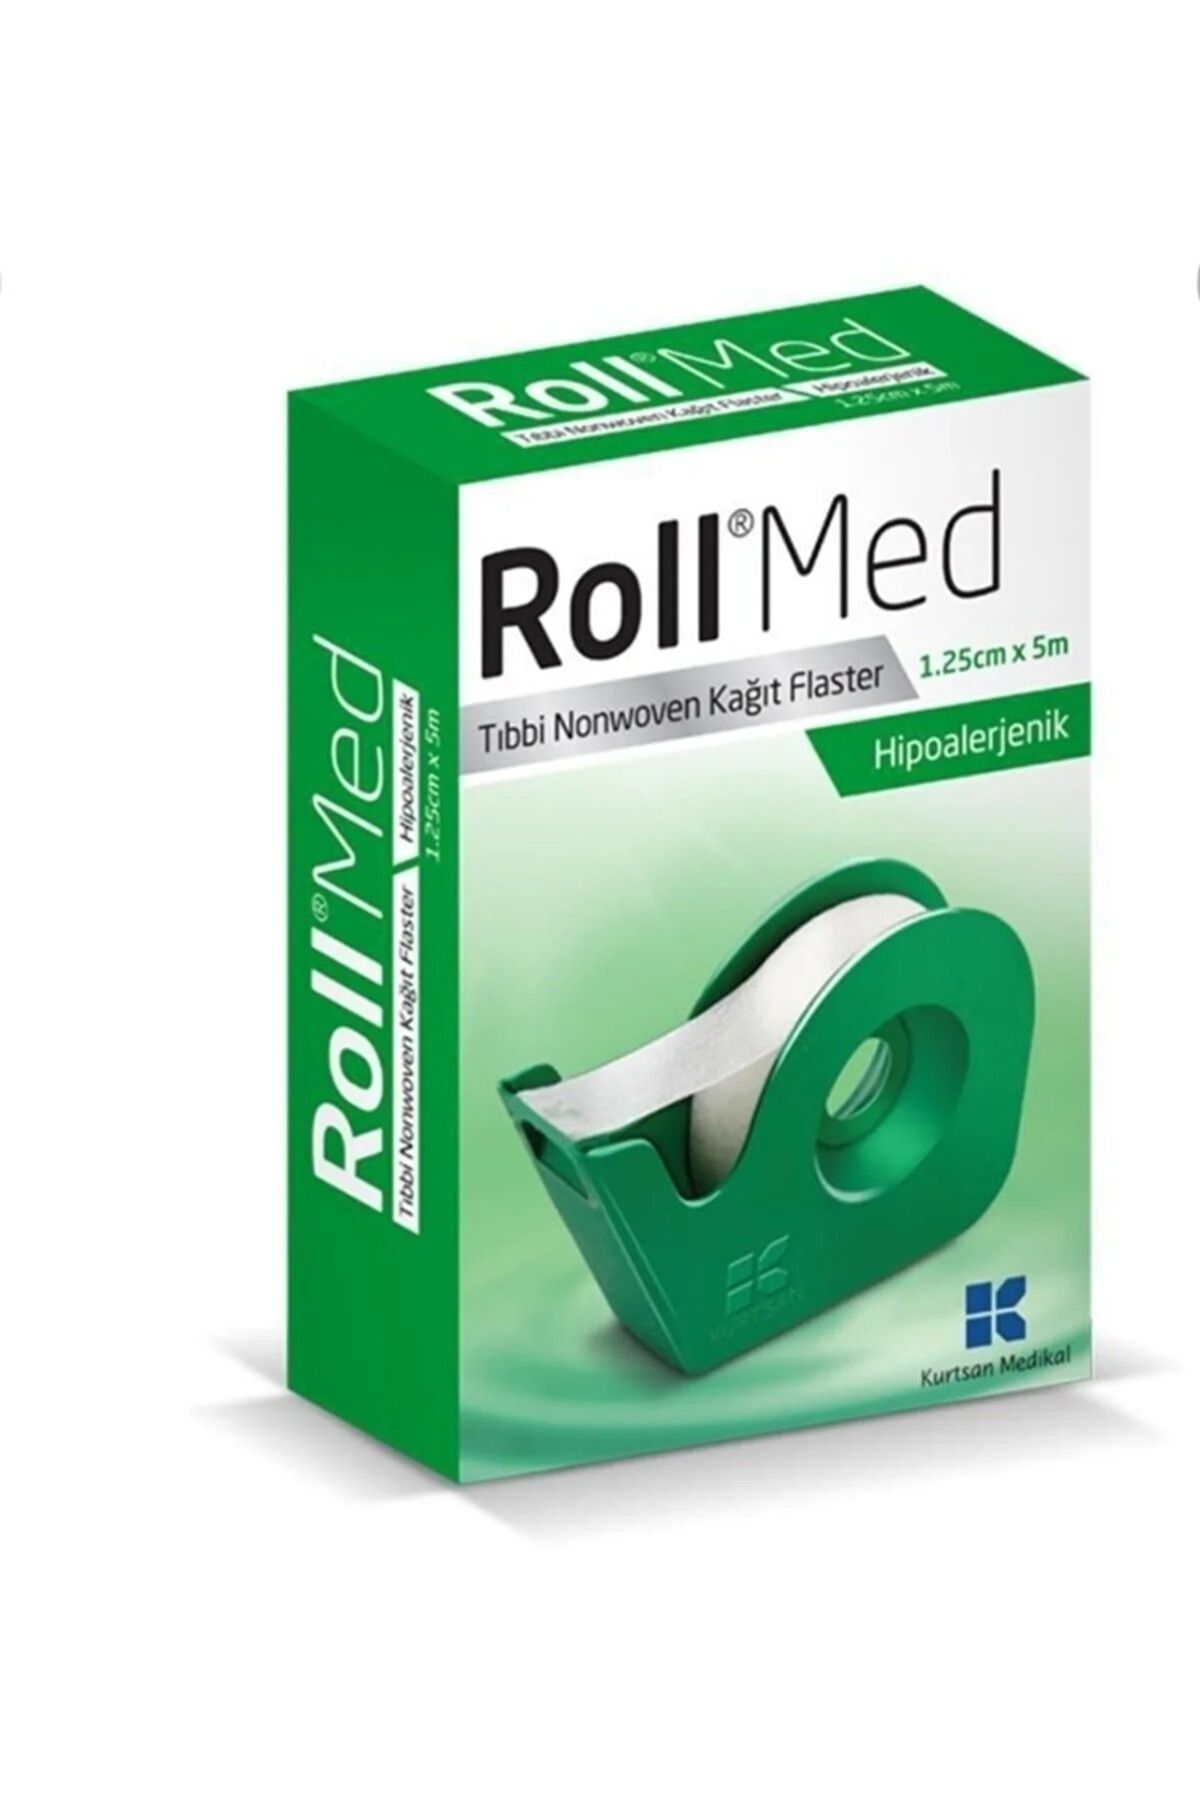 Roll Med 1.25 Cm X 5 M Tıbbi Nonwoven Kağıt Flaster